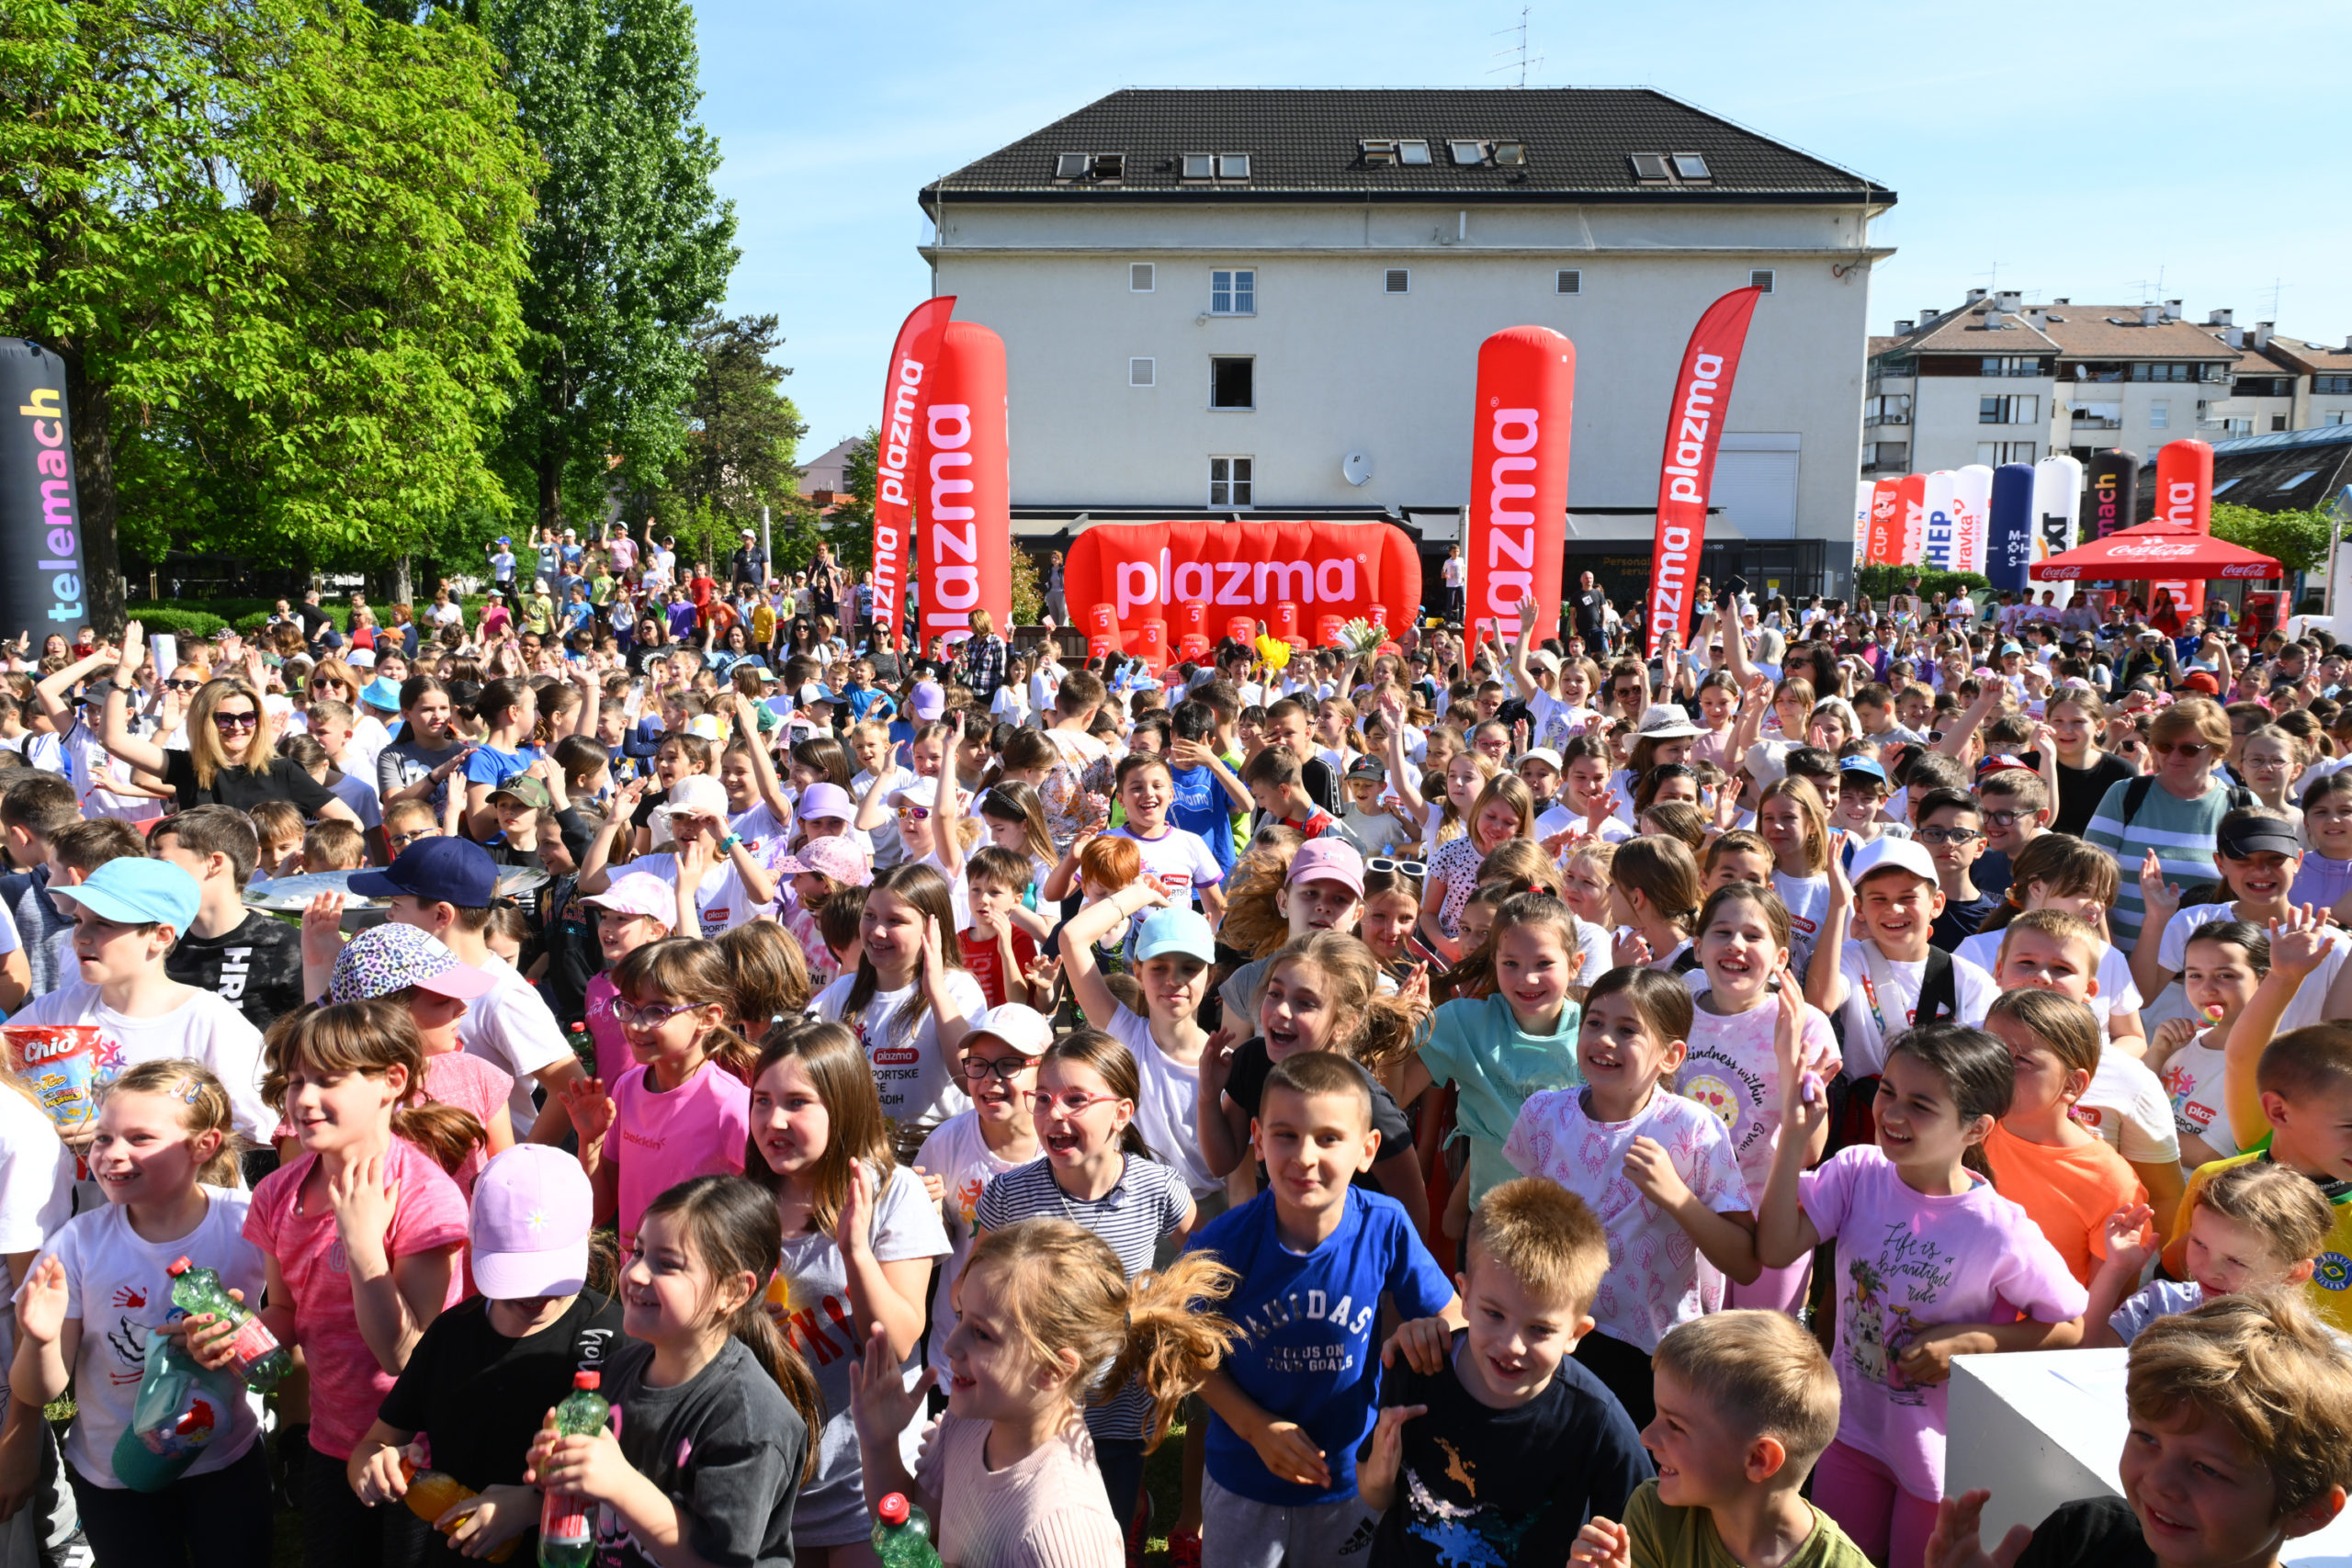 Telemach Dan sporta u Velikoj Gorici zabavan i veseo festival sporta